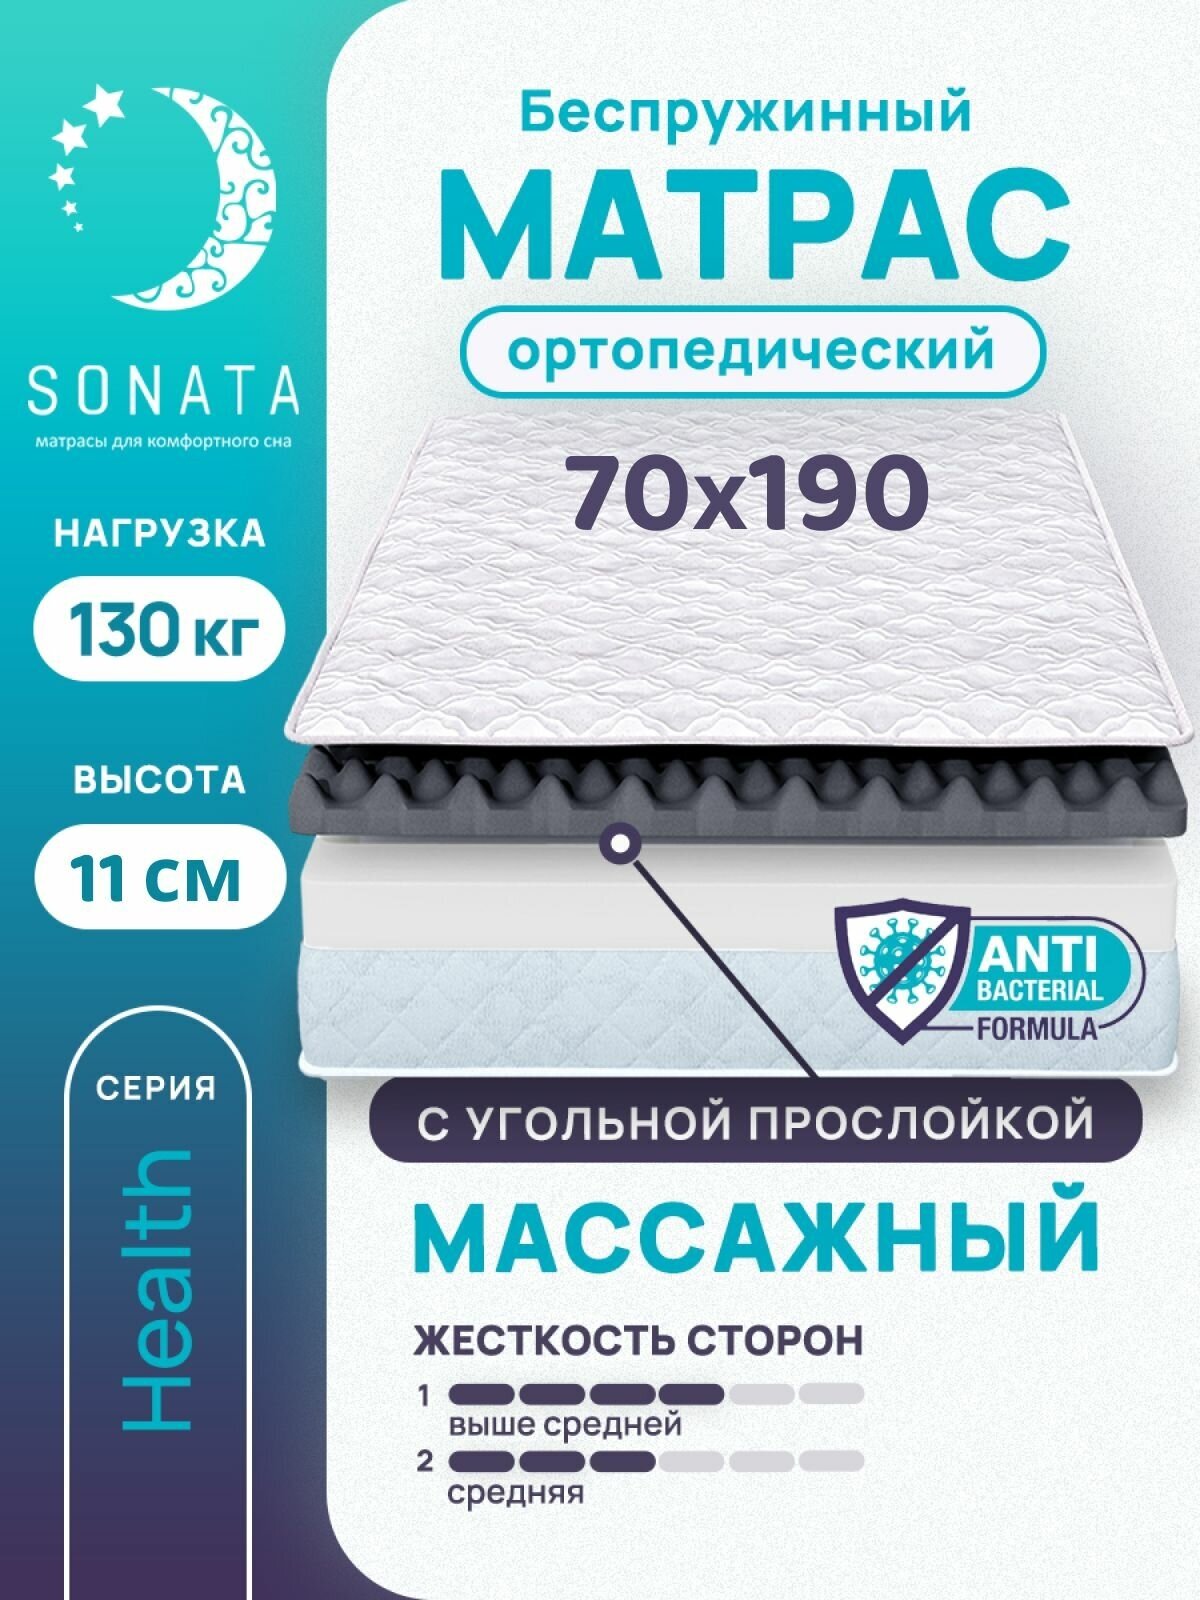 Матрас 70х190 см SONATA, беспружинный, односпальный, матрац для кровати, высота 11 см, с массажным эффектом